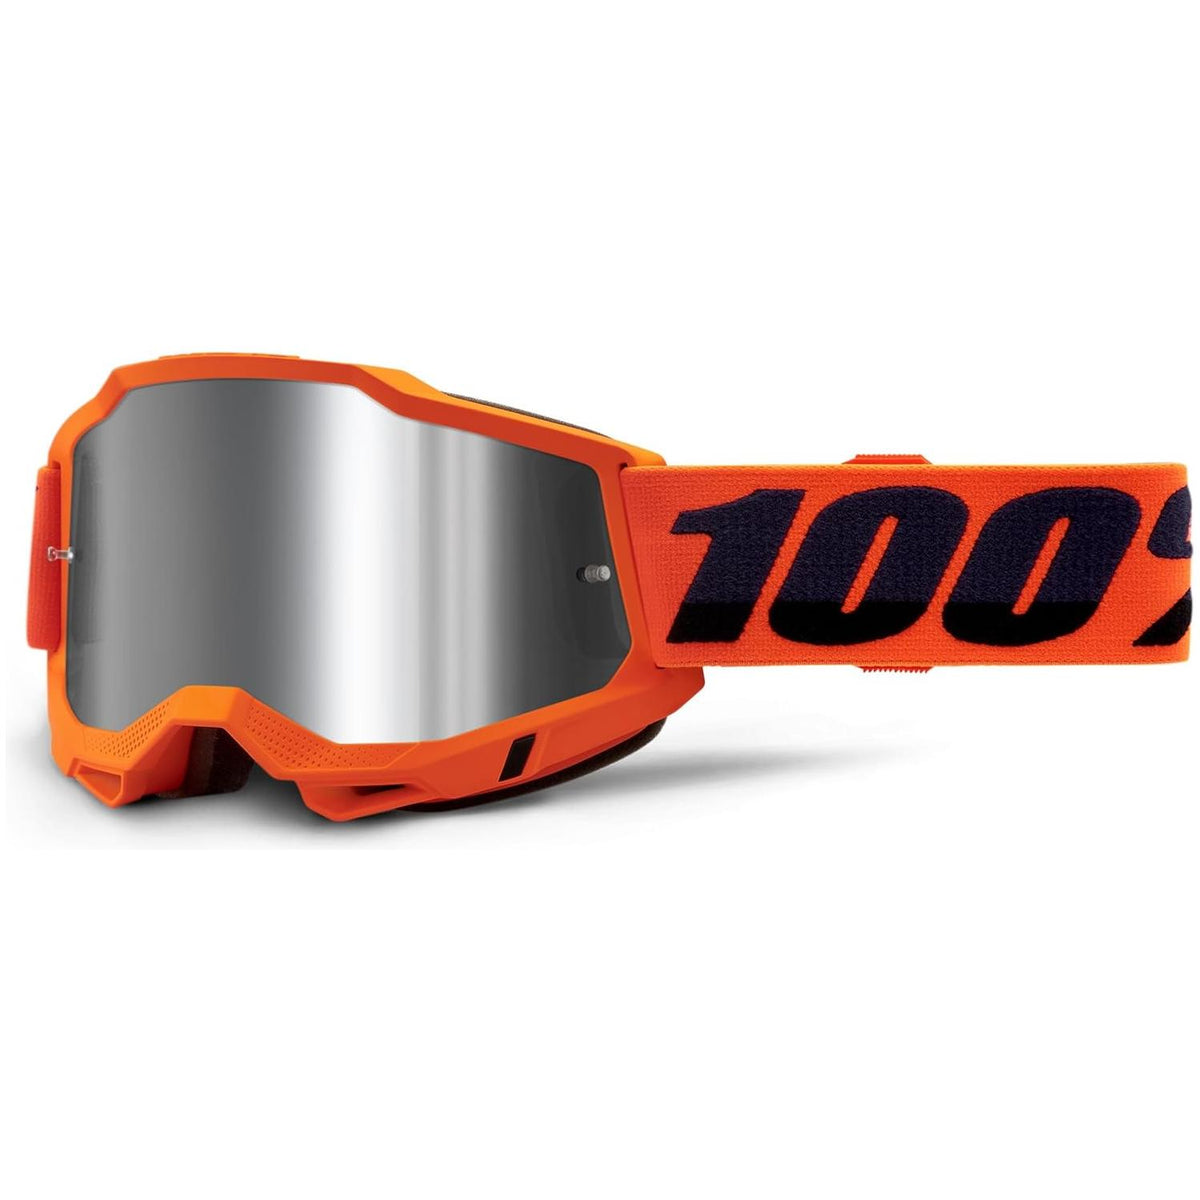 100% Accuri 2 Moto/MTB Goggle - Neon/Orange; Mirror Silver